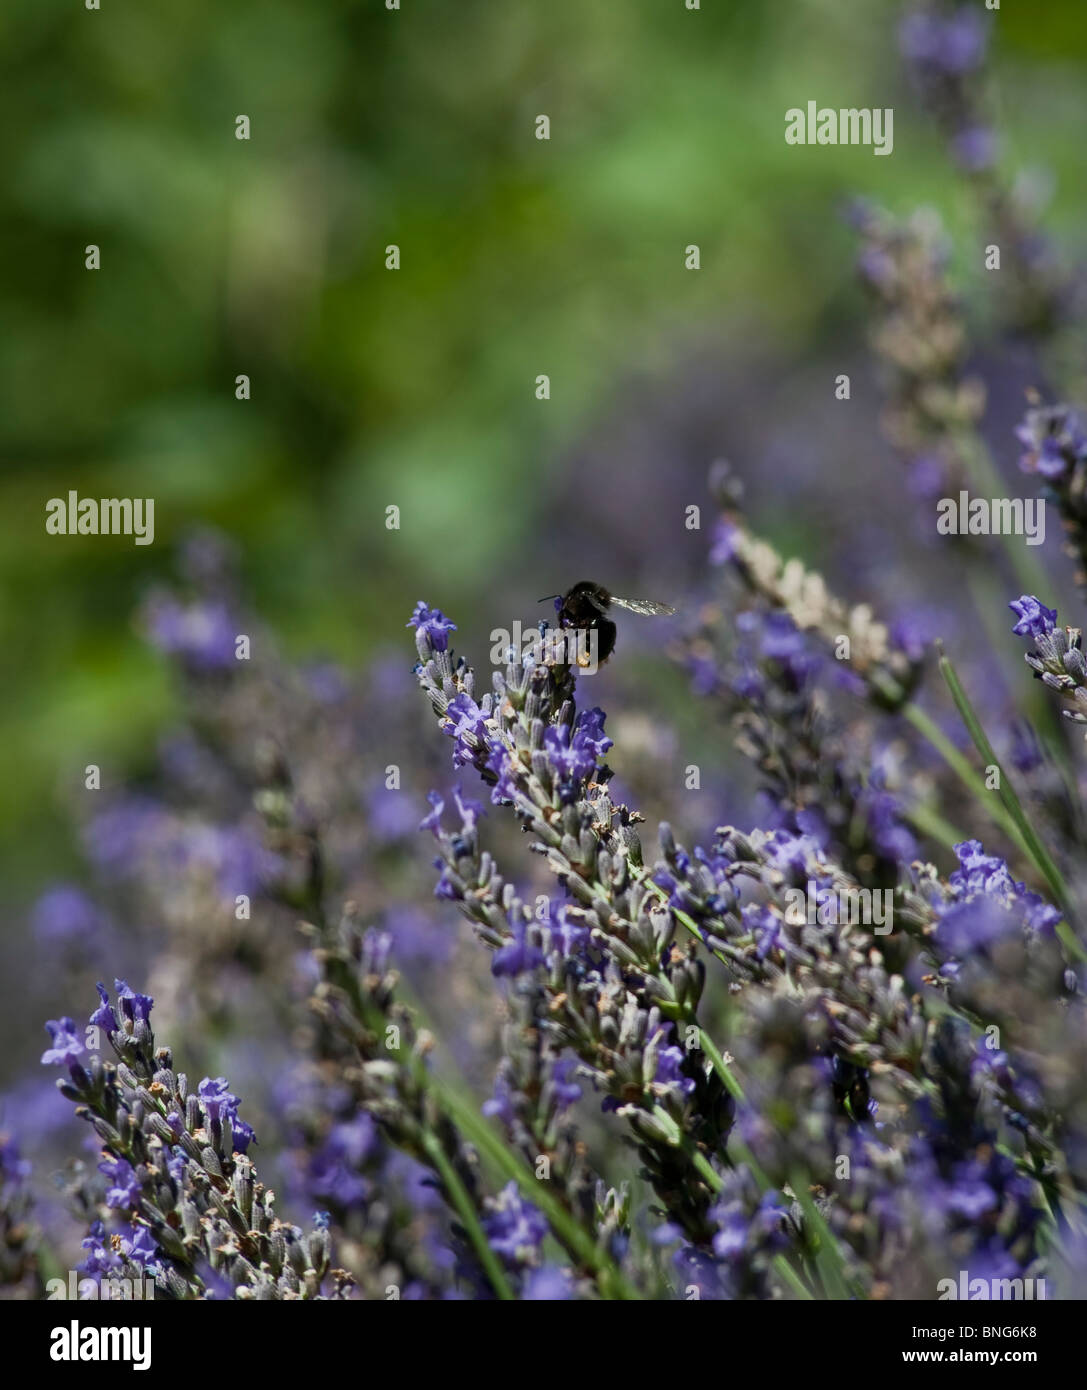 Paris, France, Urban Parks, Gardens, 'Bois de Boulogne' Bumble Bees on Lavender Flowers, Close up, Decor Stock Photo